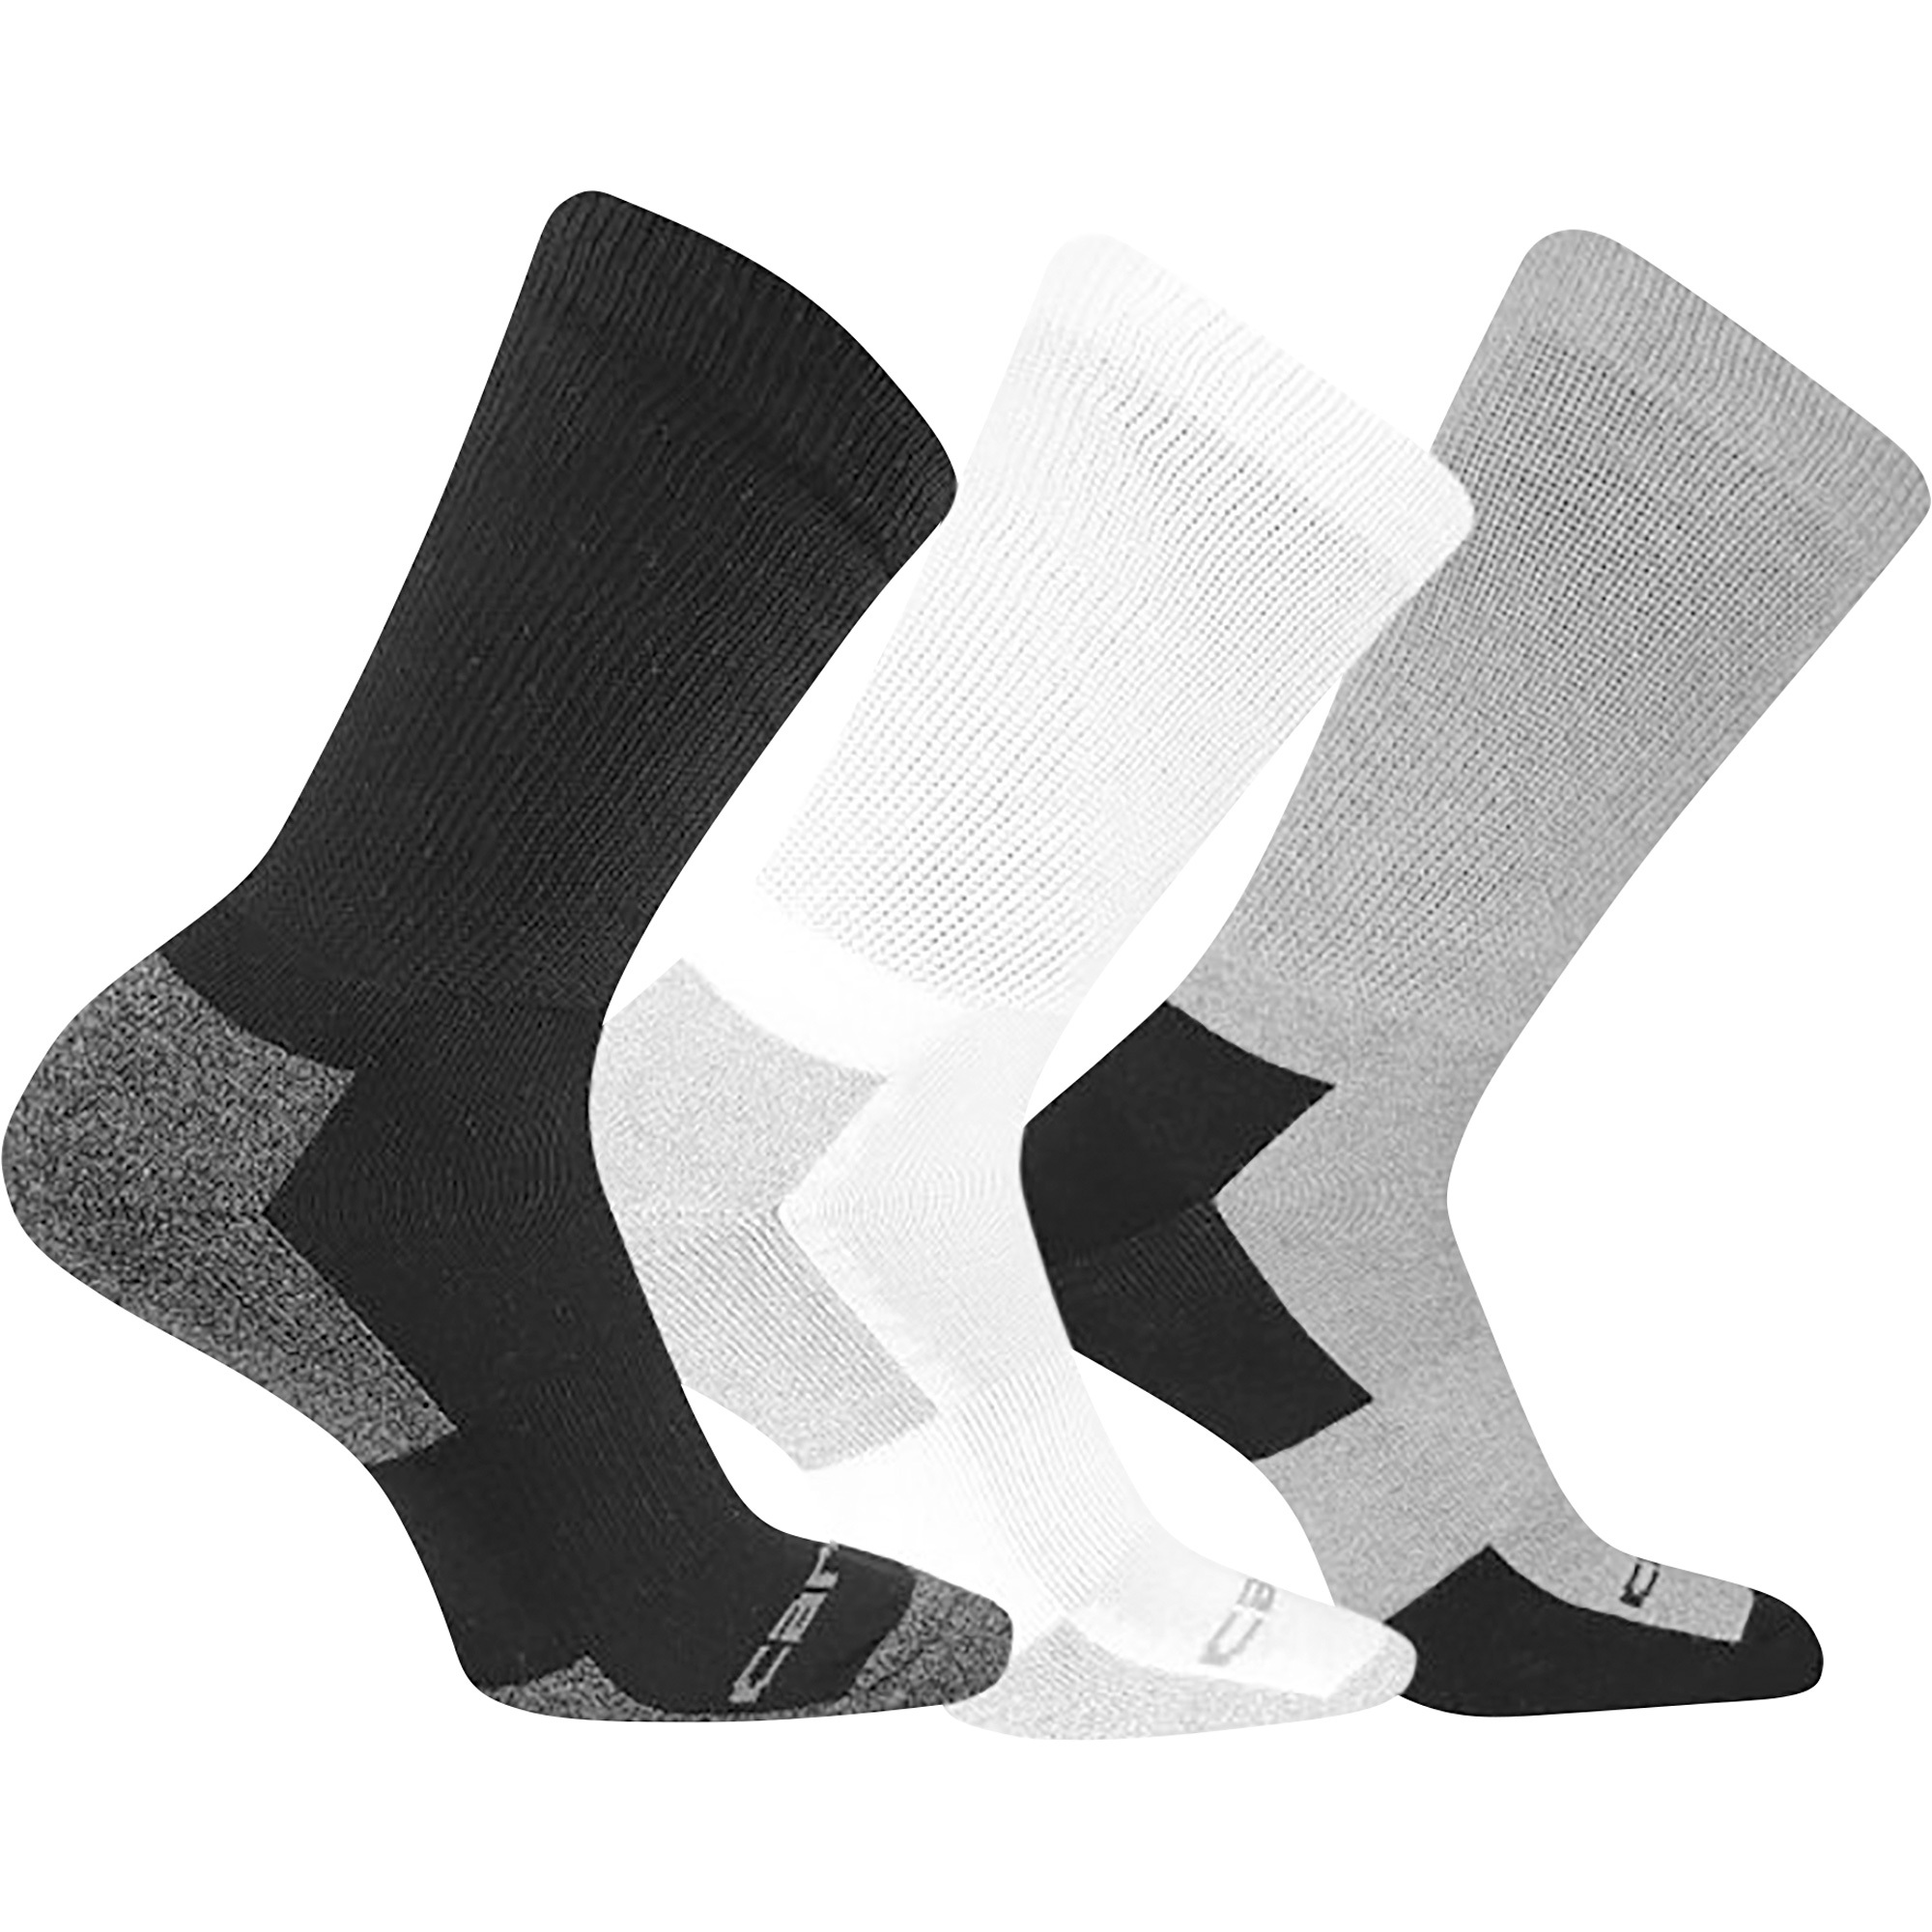 Carhartt Menâs Premium Comfort Stretch Crew Socks with FastDry Technology â 3 Pairs, XL, White/Black/Gray, Model A2213-3 AST01XL